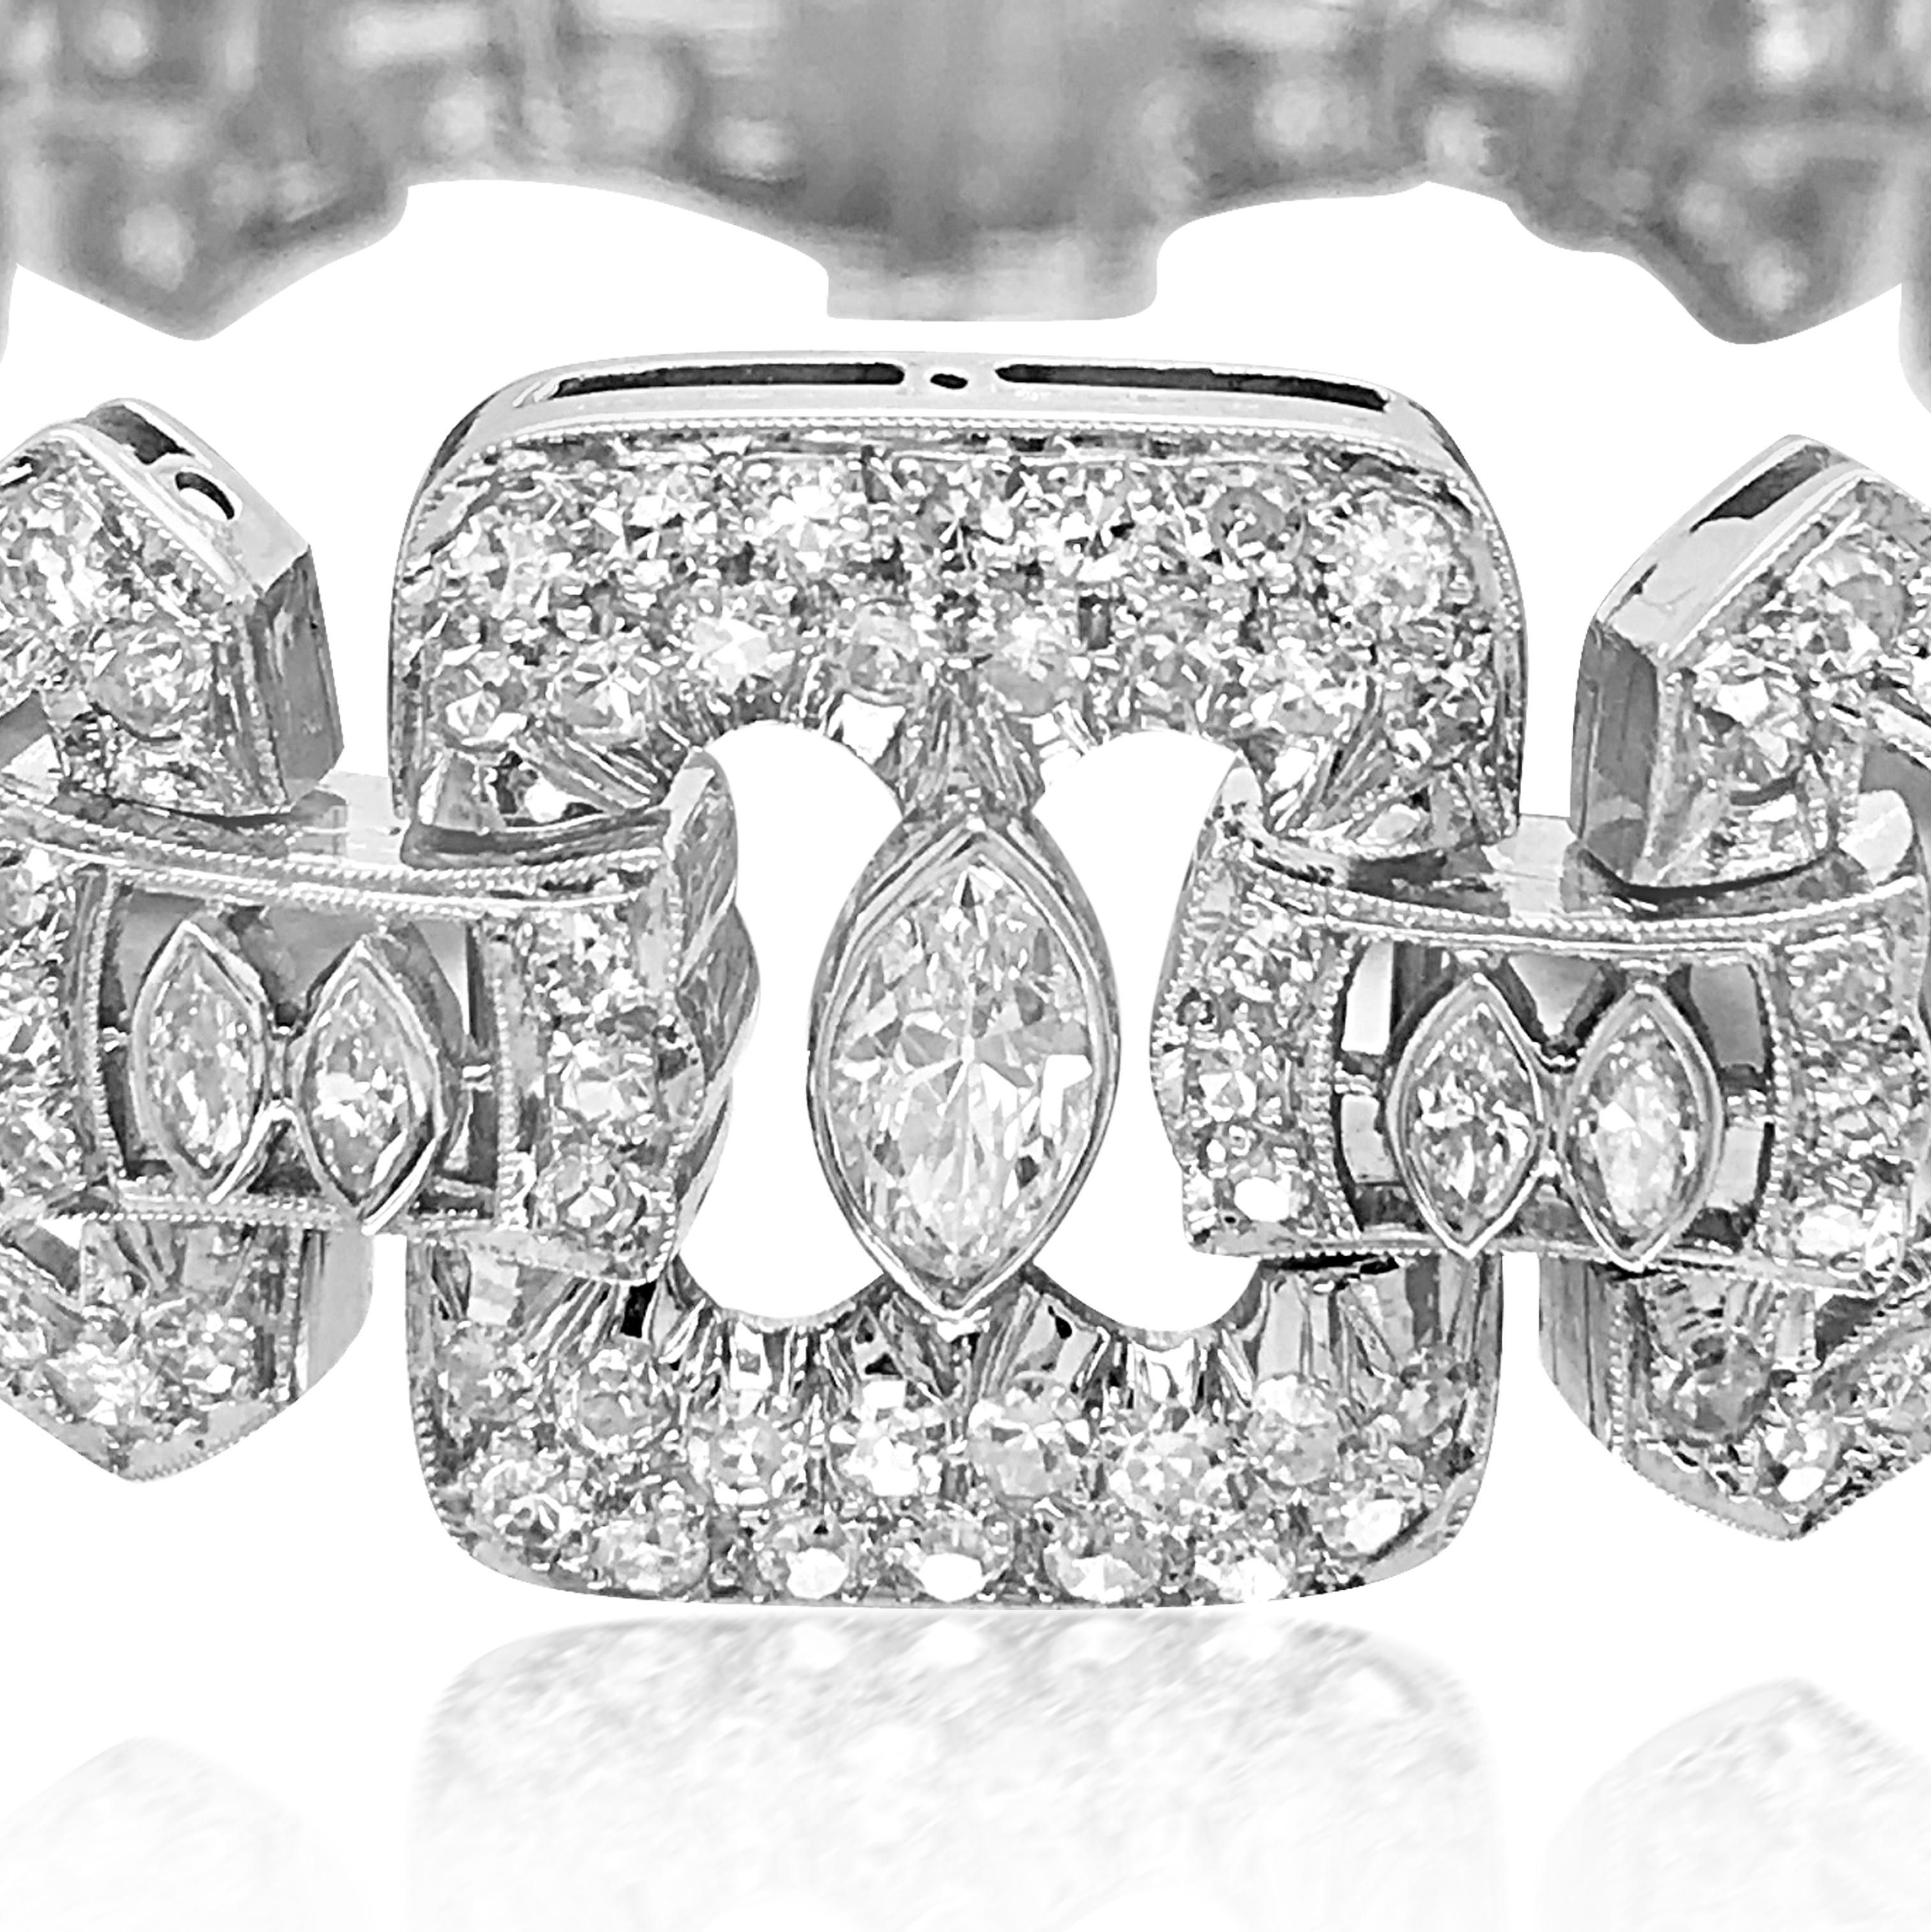 Ce bracelet en diamants Graff est fabriqué en platine, pèse 54,4 grammes et mesure 19 cm (7,5 pouces) de long et 16 mm de large. Ce bracelet quintessentiel crée un étonnant motif géométrique. Le bracelet comprend un diamant marquise, des diamants